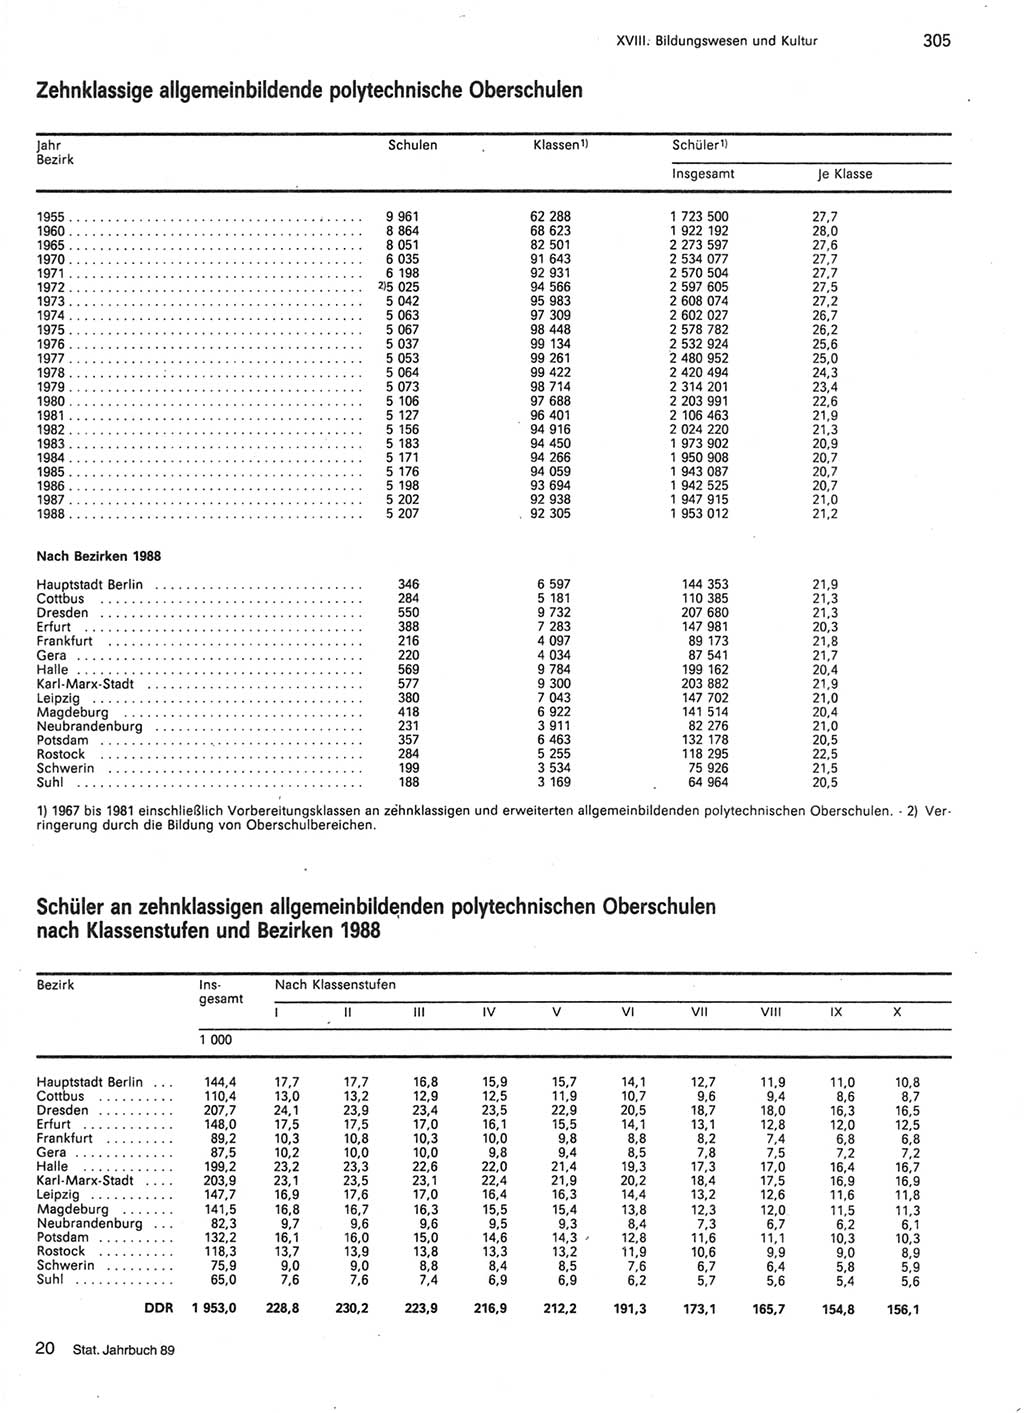 Statistisches Jahrbuch der Deutschen Demokratischen Republik (DDR) 1989, Seite 305 (Stat. Jb. DDR 1989, S. 305)